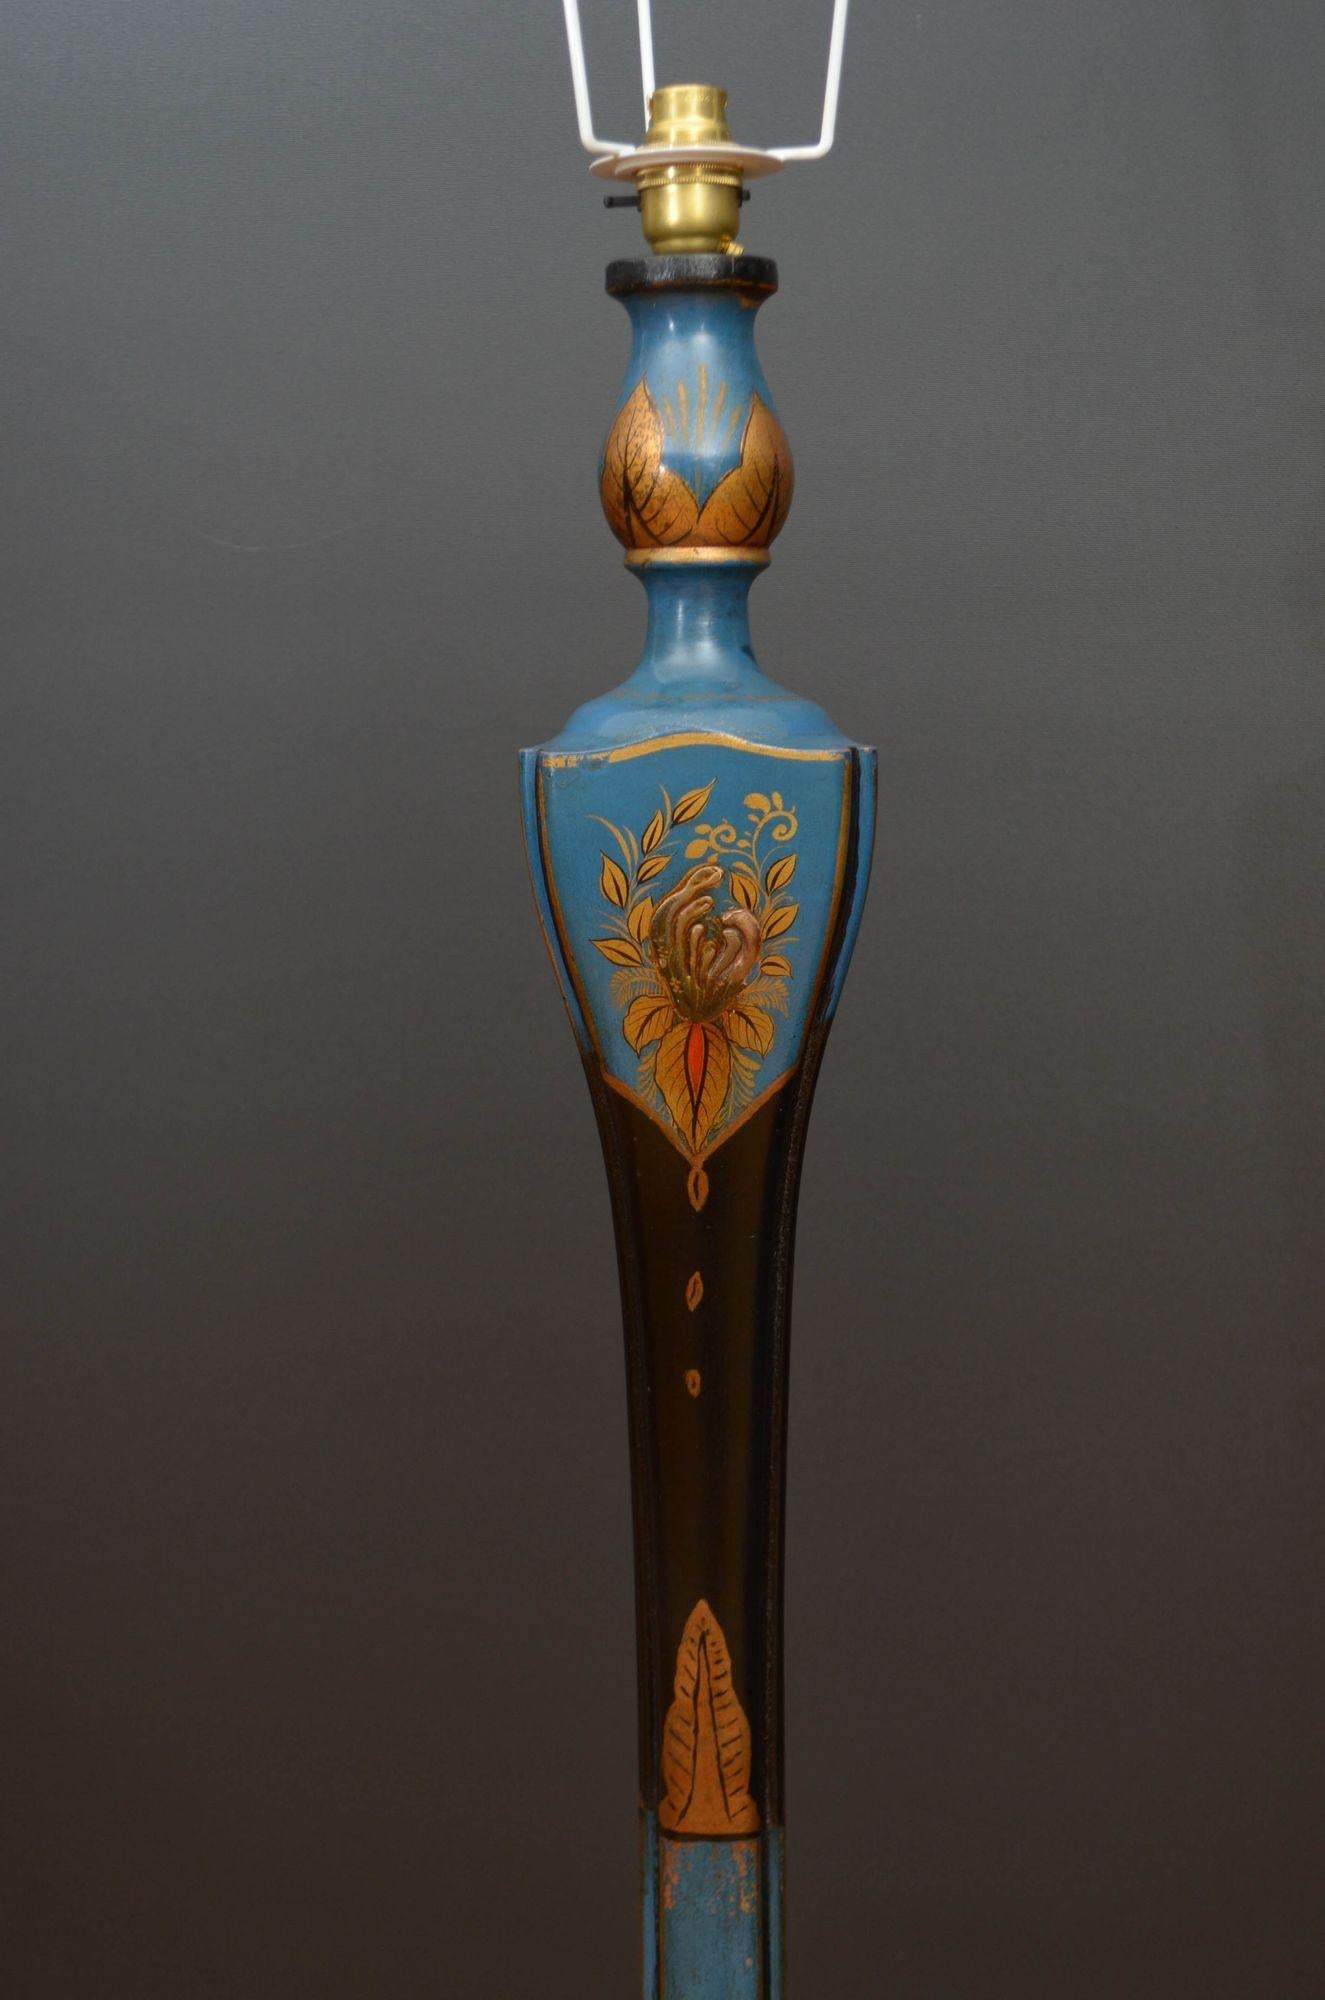 St049 Lampe standard du début du 20e siècle en bois tourné et laqué, décorée de Chinoiserie en bleu foncé, avec un montant tourné décoratif et une base bombée reposant sur trois pieds plats en forme de chignon.
La lampe a été récemment recâblée et